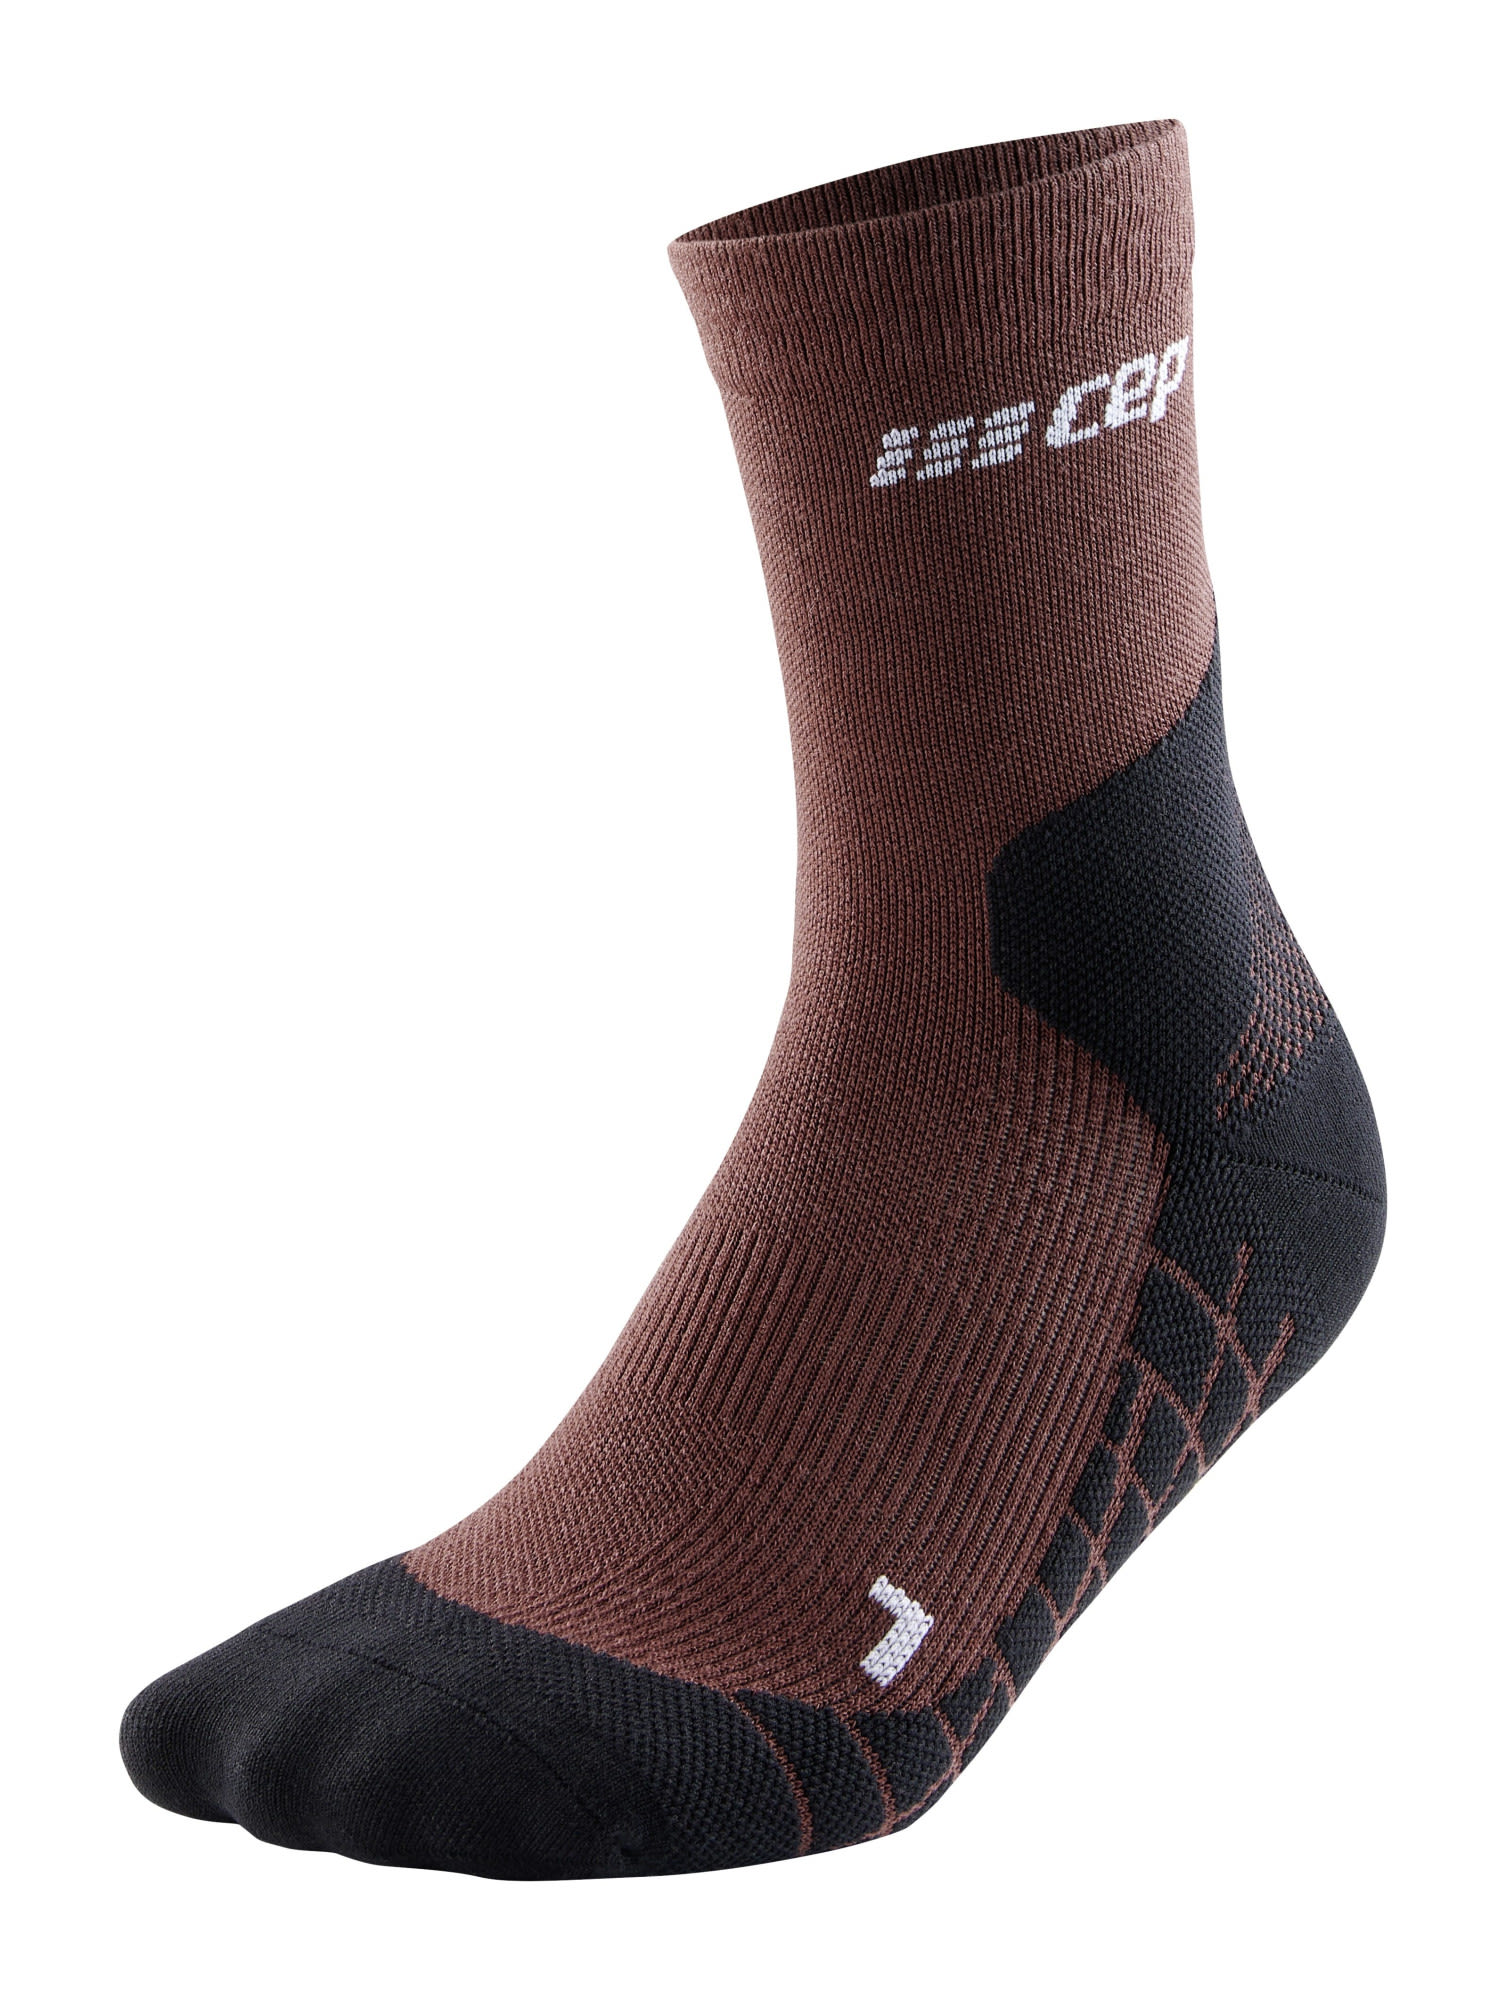 Cep M Light Merino Socks Hiking Mid Cut Braun | Größe IV | Herren Kompressions